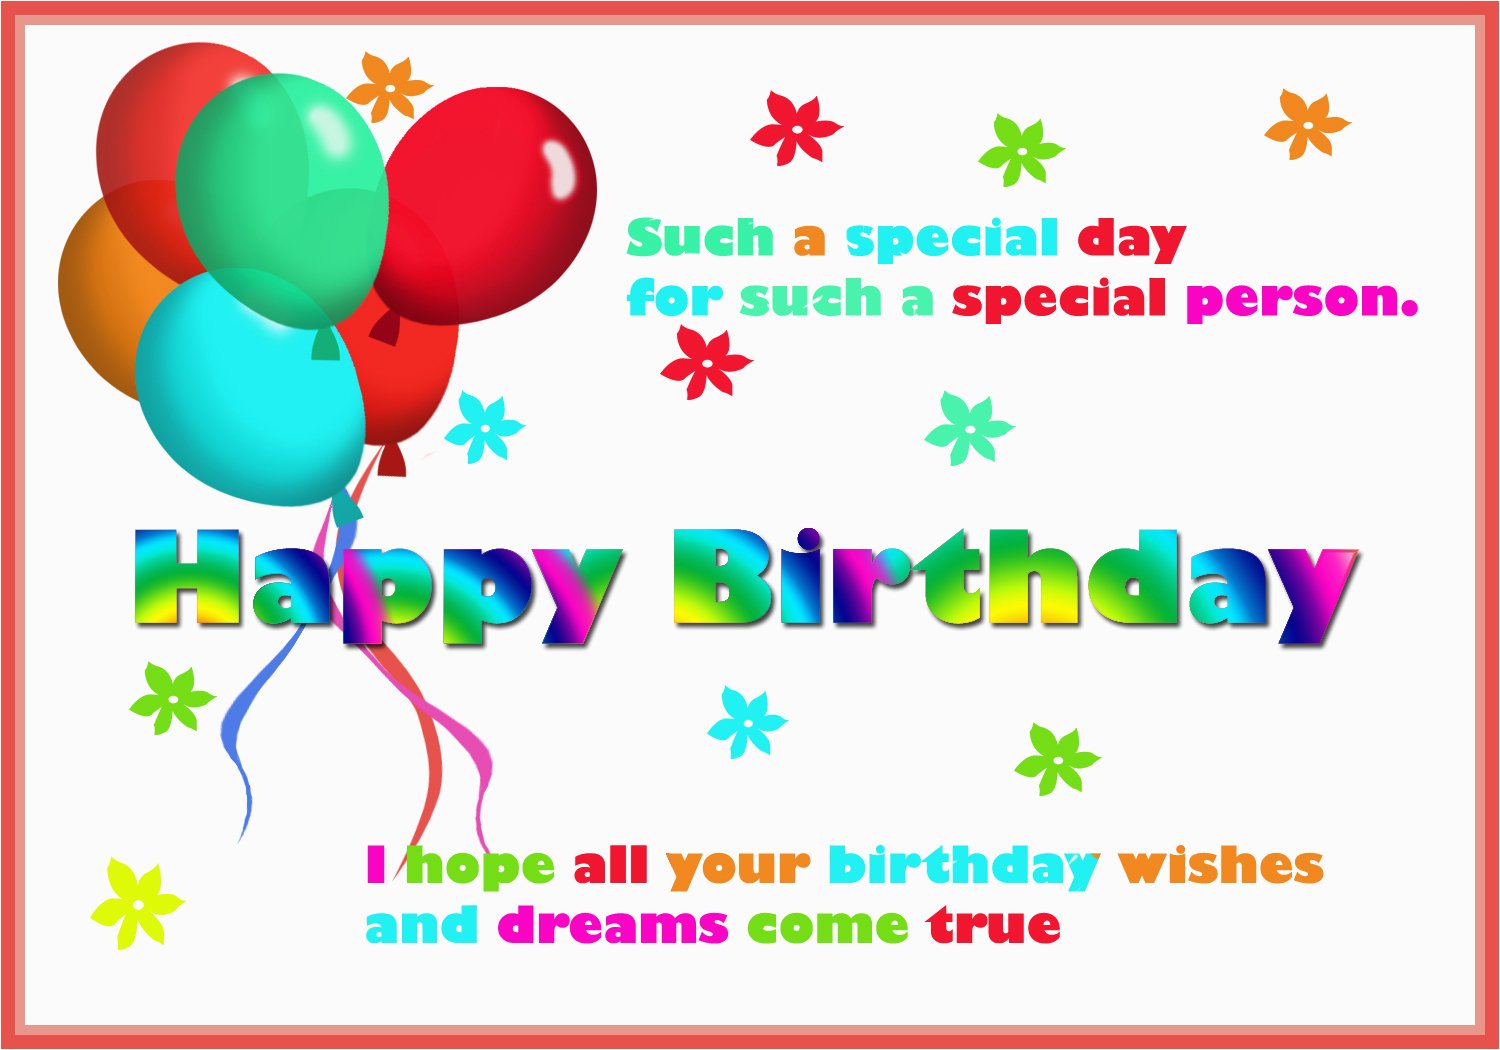 Happy Birthday Cards Online Free To Make BirthdayBuzz